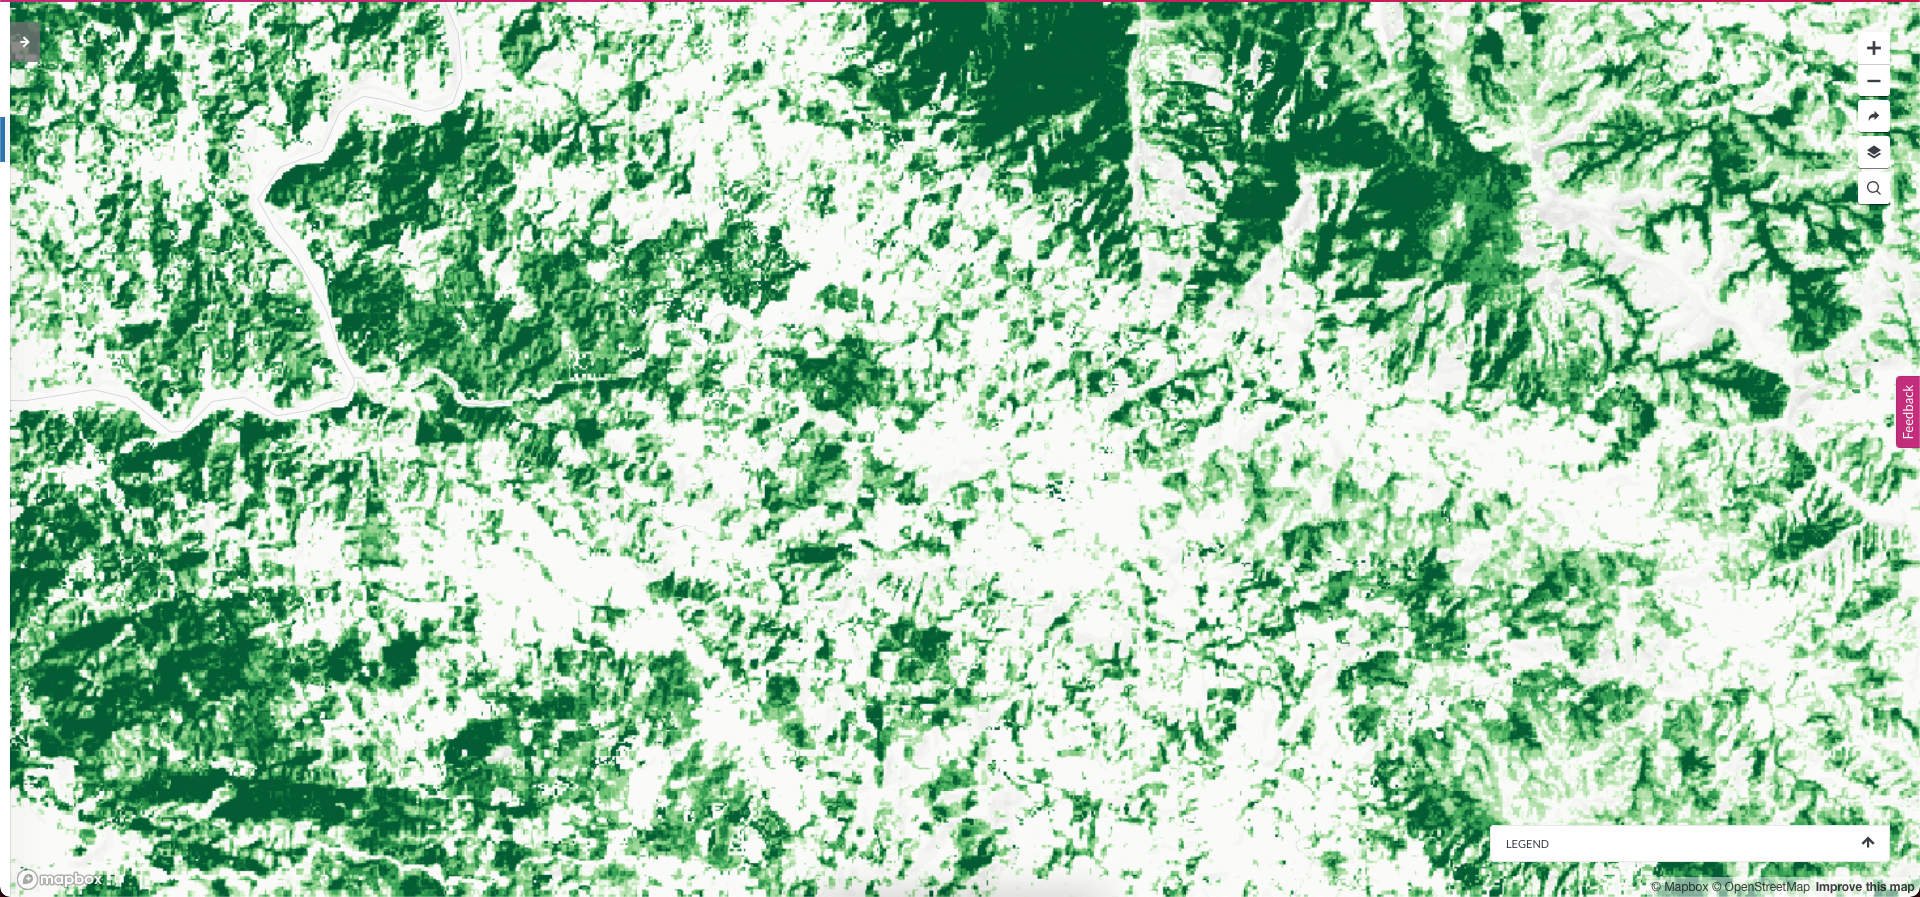 <p>gráficos mostra árvores em paisagens-mosaico no méxico</p>“><img src=